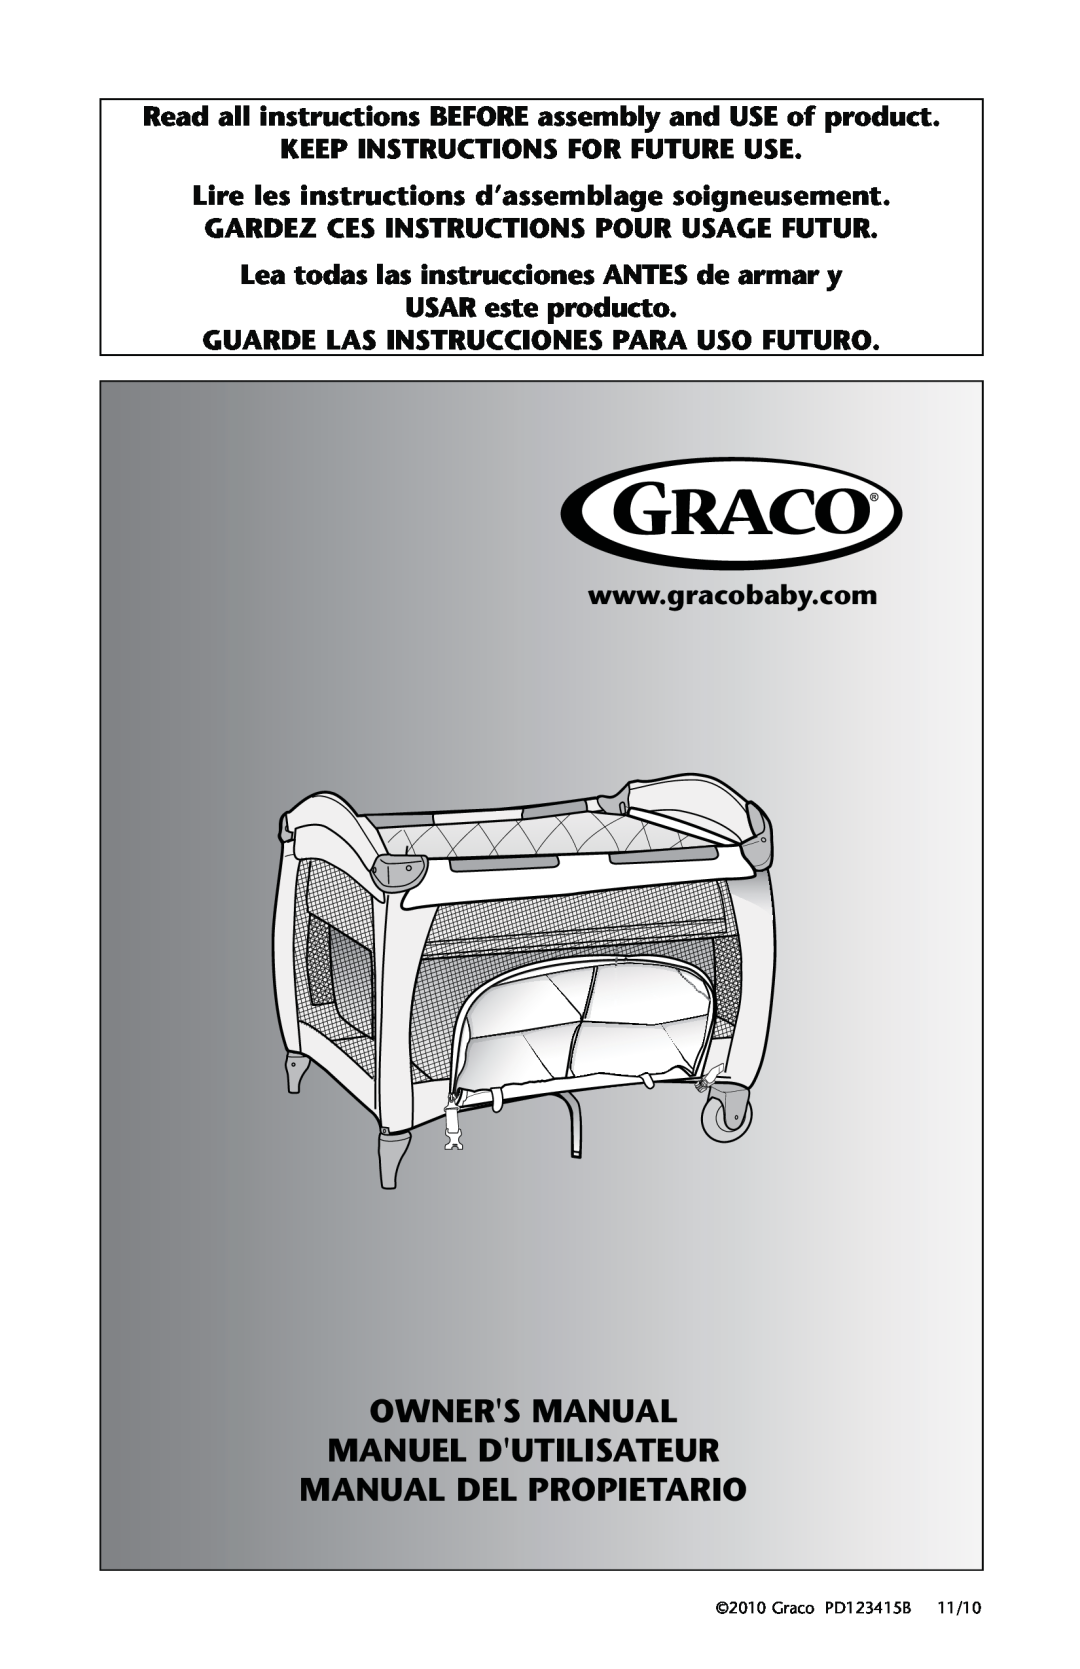 Graco owner manual Owners Manual, Manual Del Propietario, Manuel Dutilisateur, Graco PD123415B, 11/10 